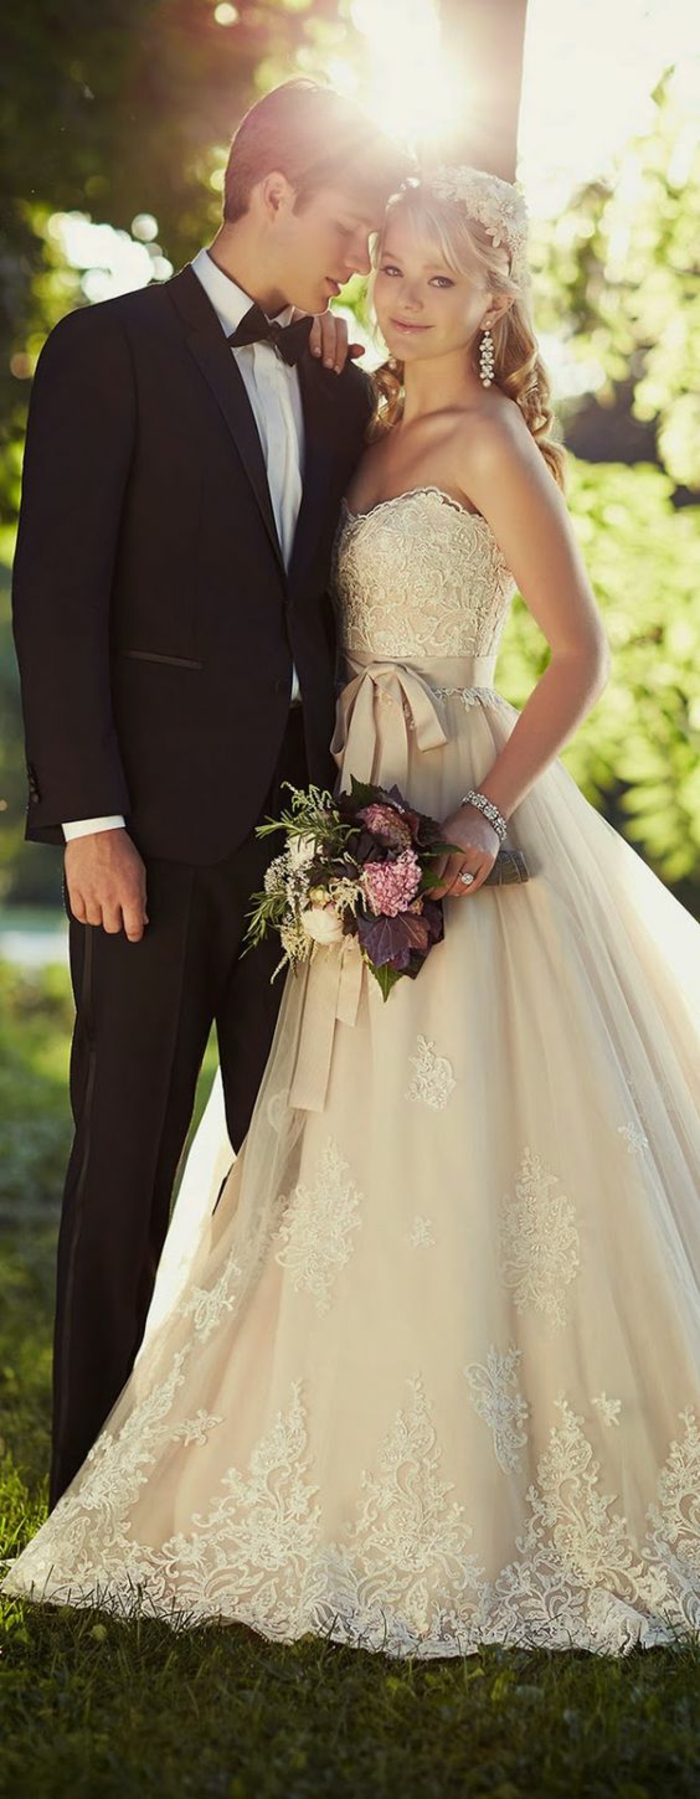 костюм-с-лети-за-сватба-носят-влюбена двойка--булка и младоженец-сватбено тържество-целувка